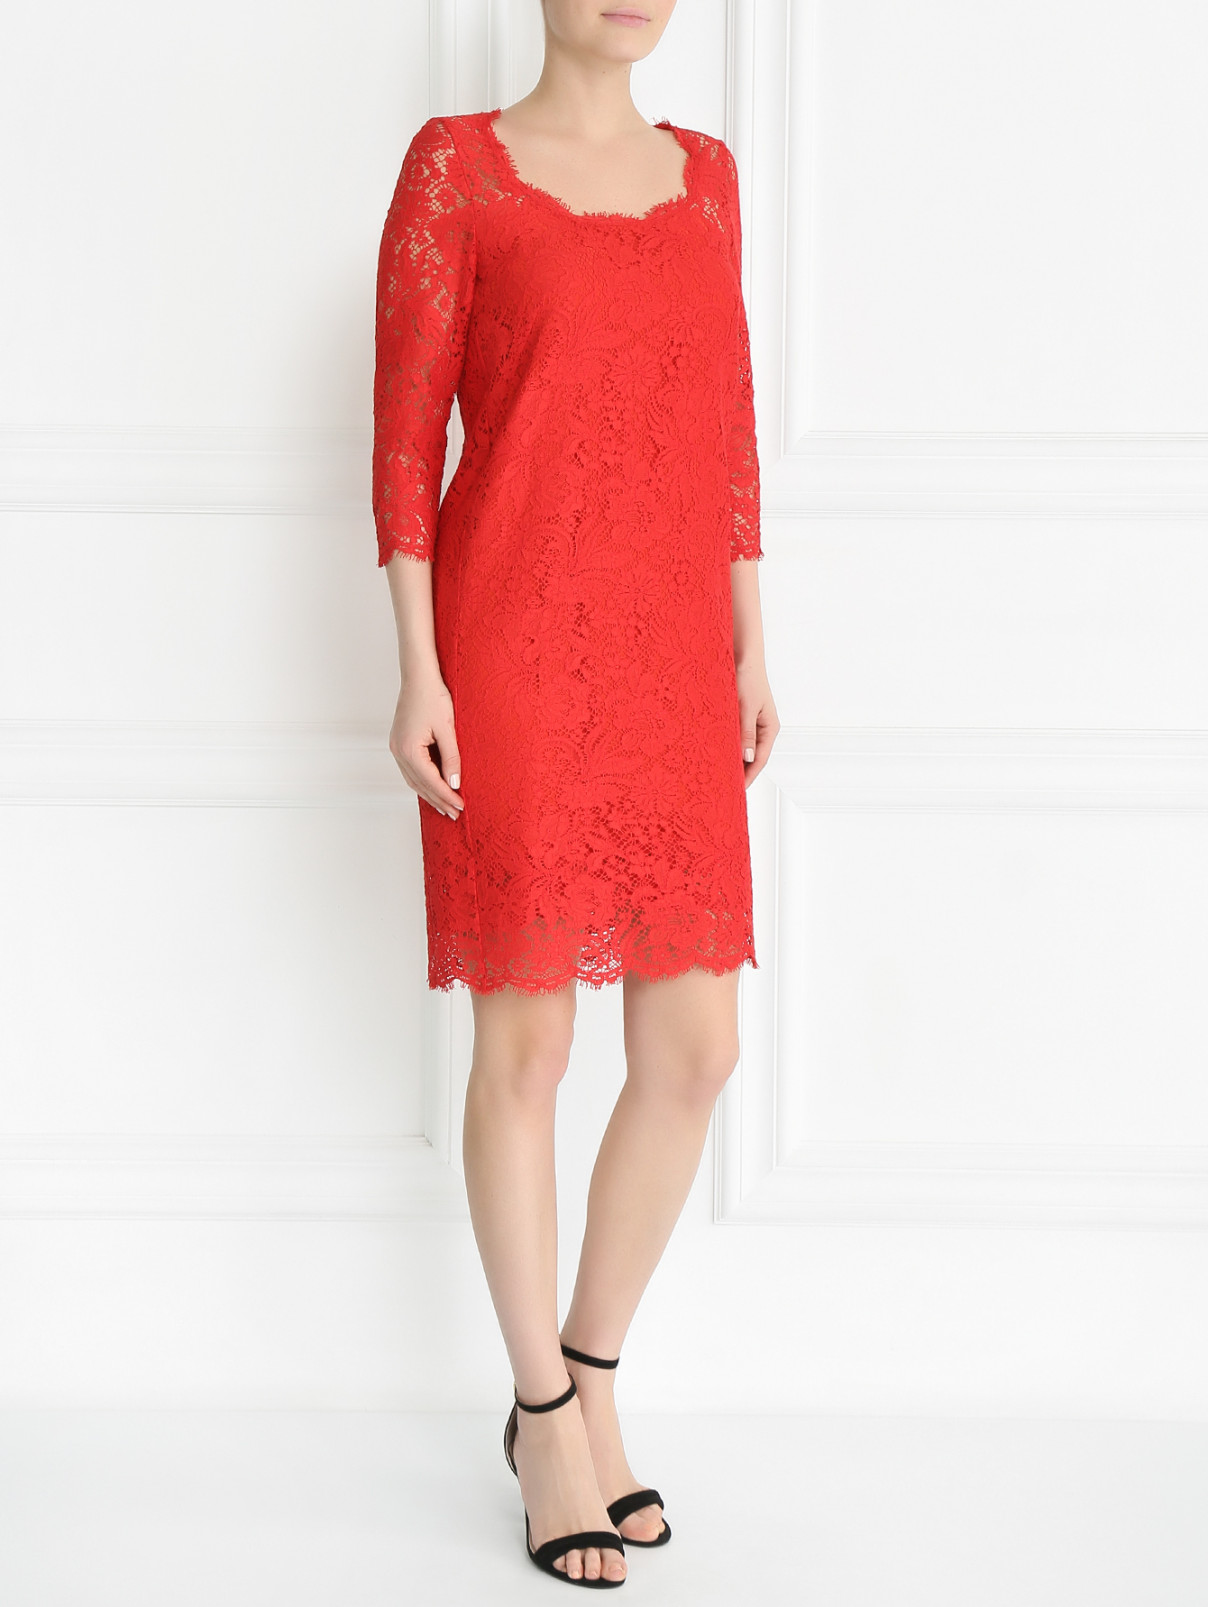 Кружевное платье из хлопка и вискозы Ermanno Scervino  –  Модель Общий вид  – Цвет:  Красный